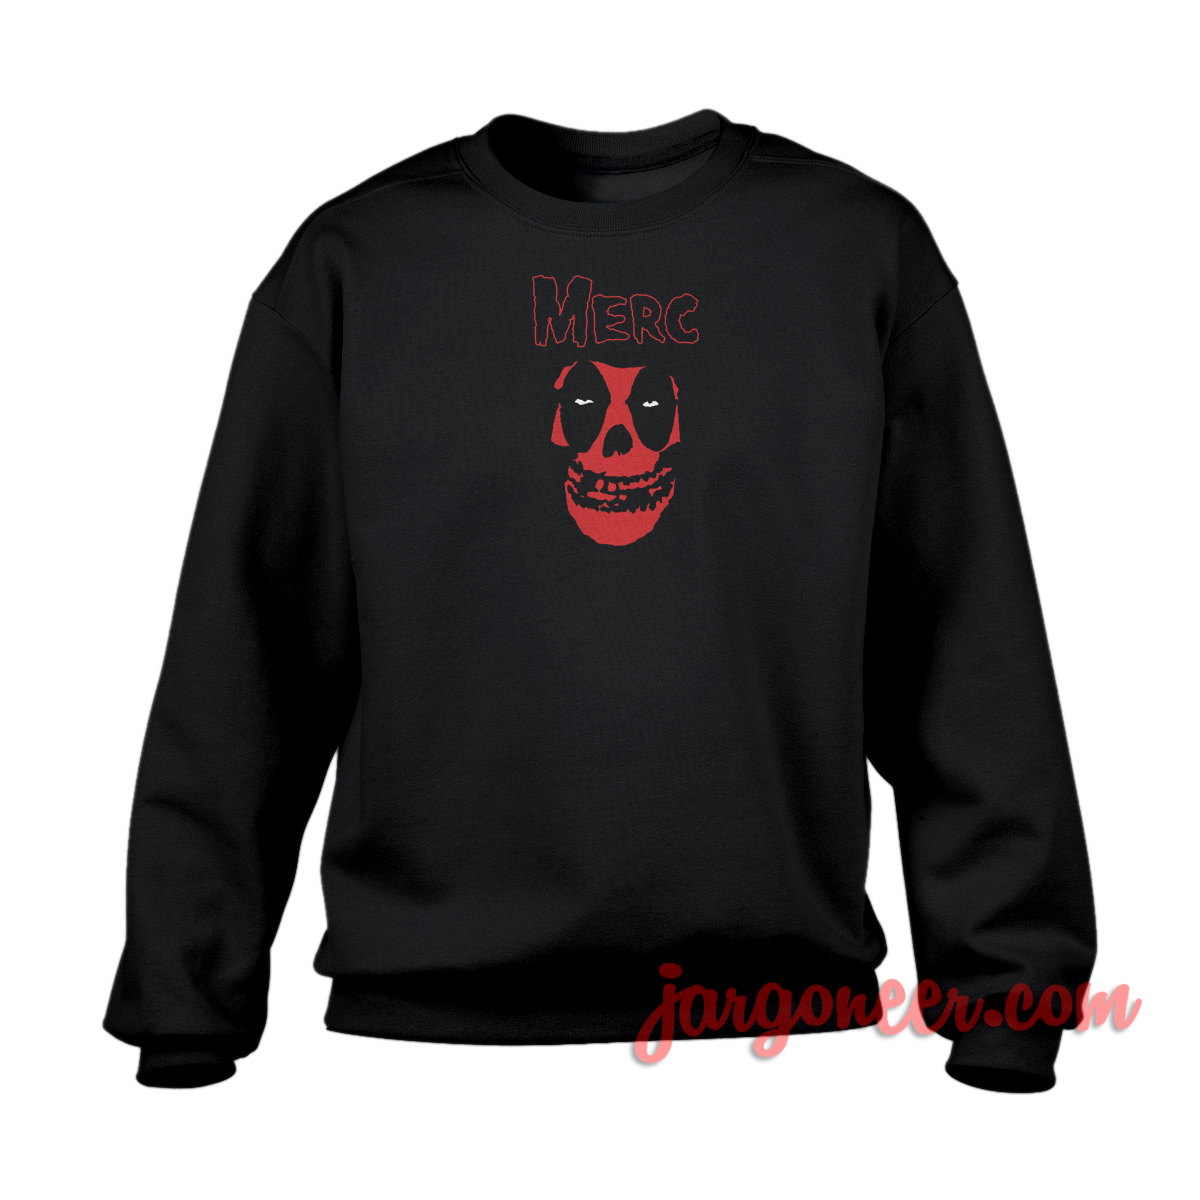 Deadpool Misfit 1 - Shop Unique Graphic Cool Shirt Designs